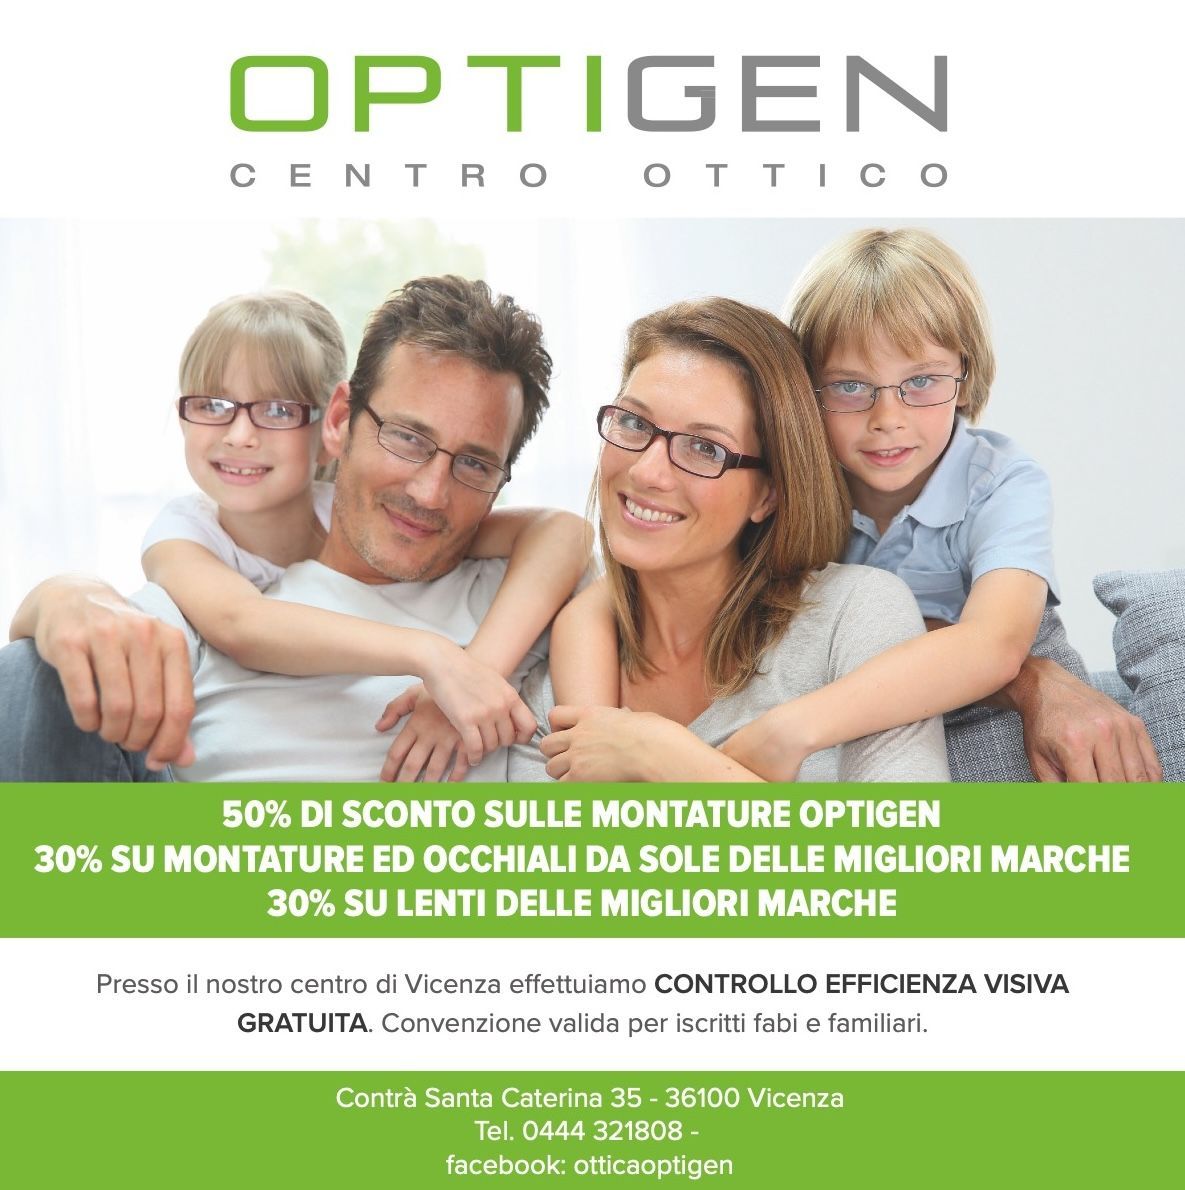 Una pubblicità per optigen centro ottico mostra una famiglia che indossa gli occhiali